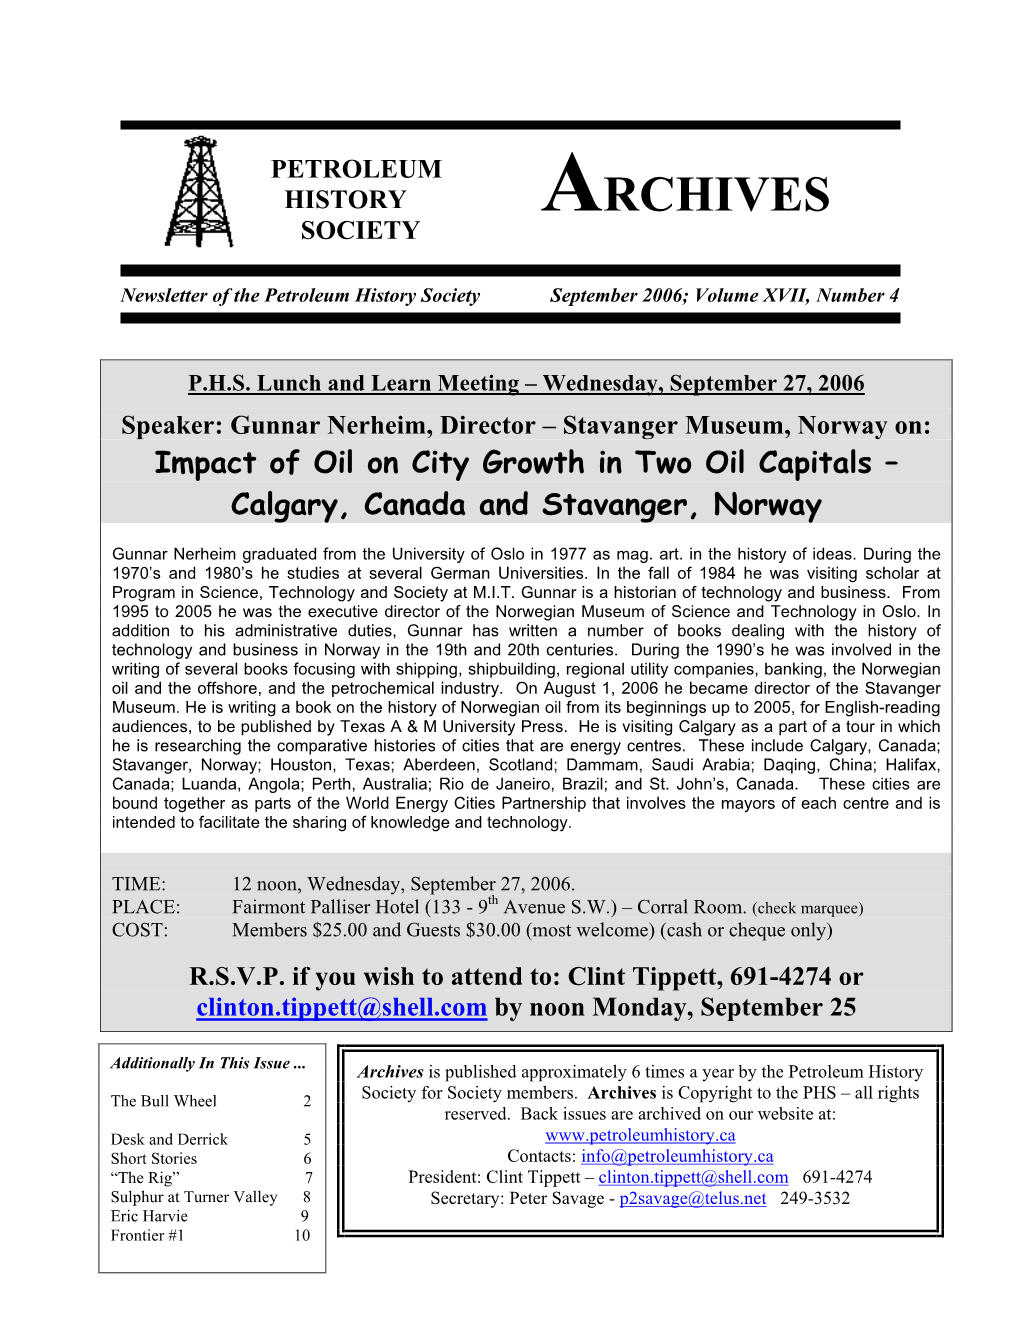 Petroleum History Society Archives Newsletter September 2006